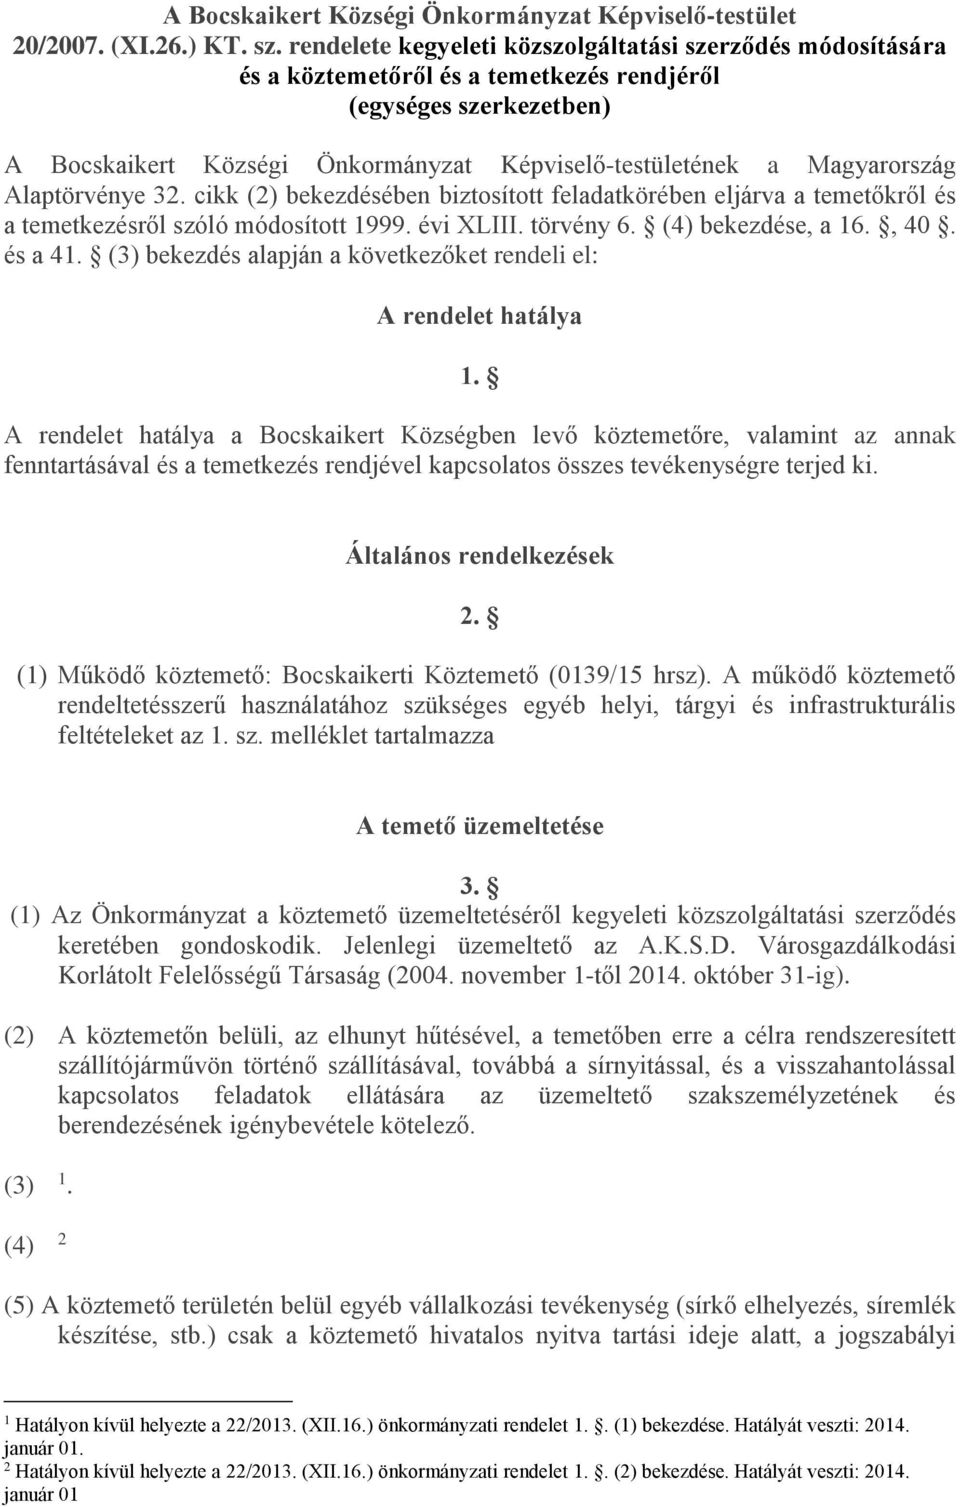 Magyarország Alaptörvénye 32. cikk (2) bekezdésében biztosított feladatkörében eljárva a temetőkről és a temetkezésről szóló módosított 1999. évi XLIII. törvény 6. (4) bekezdése, a 16., 40. és a 41.